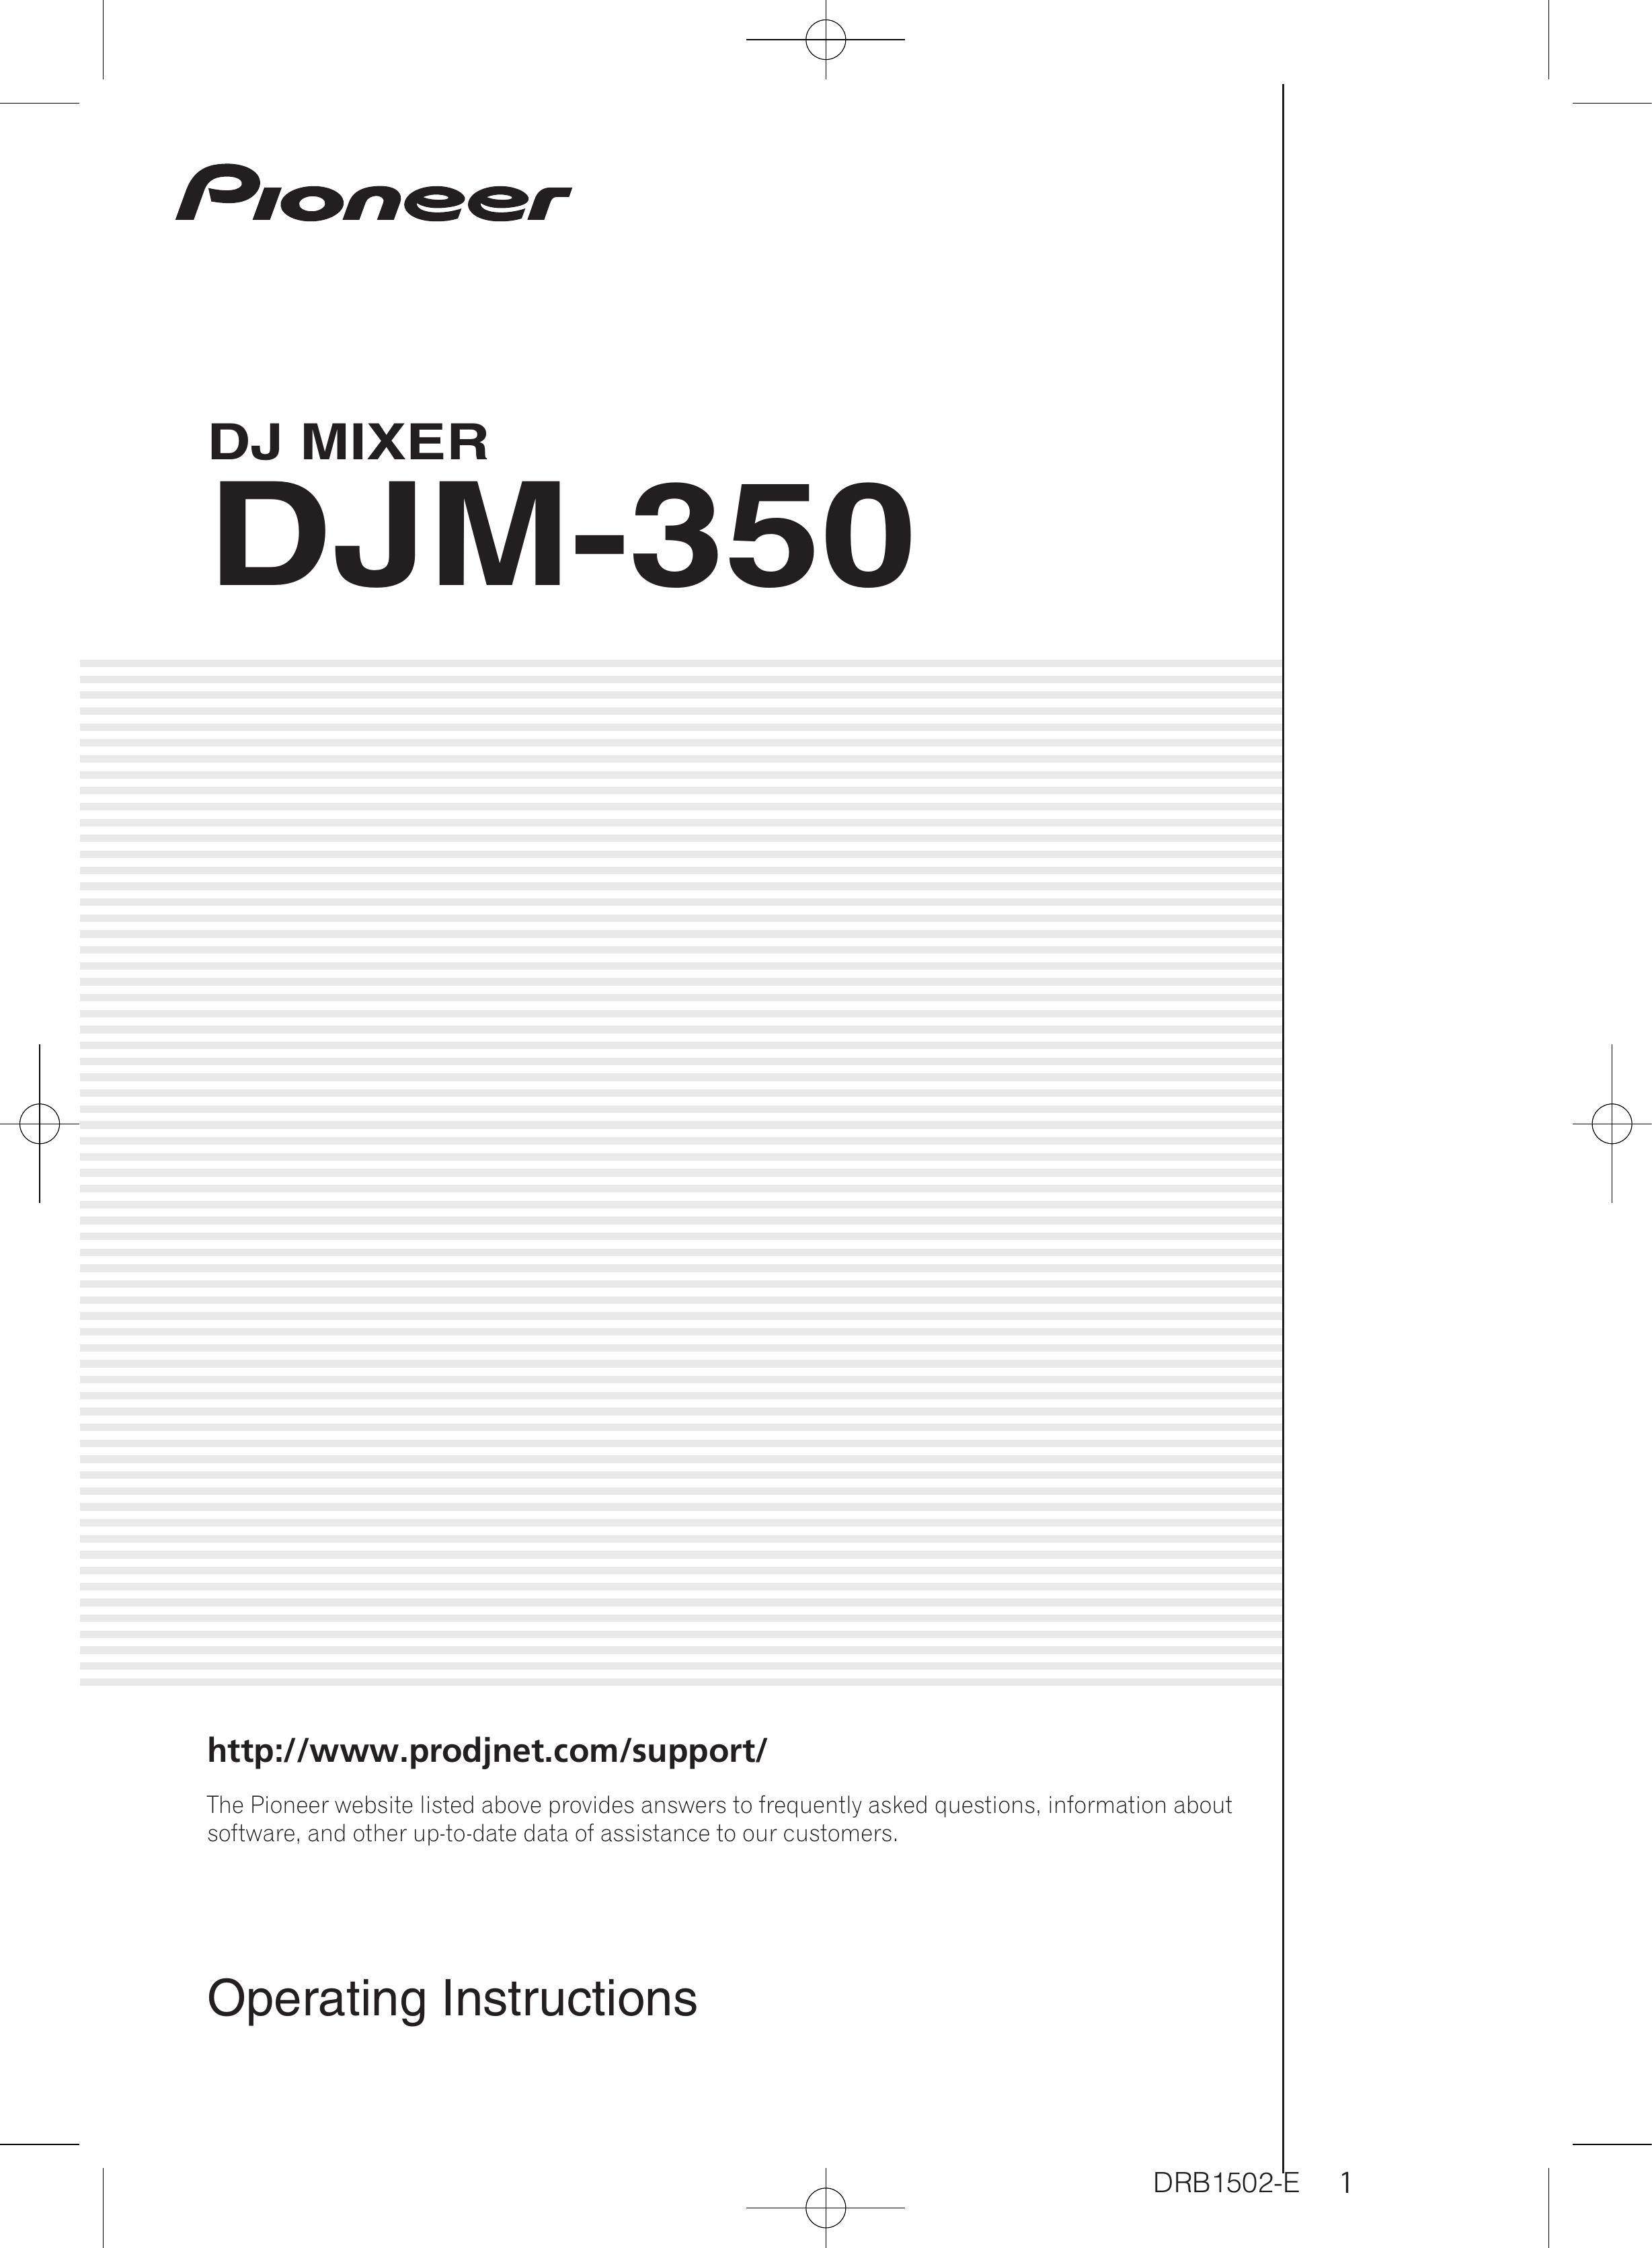 Pioneer DJM-350 Music Mixer User Manual